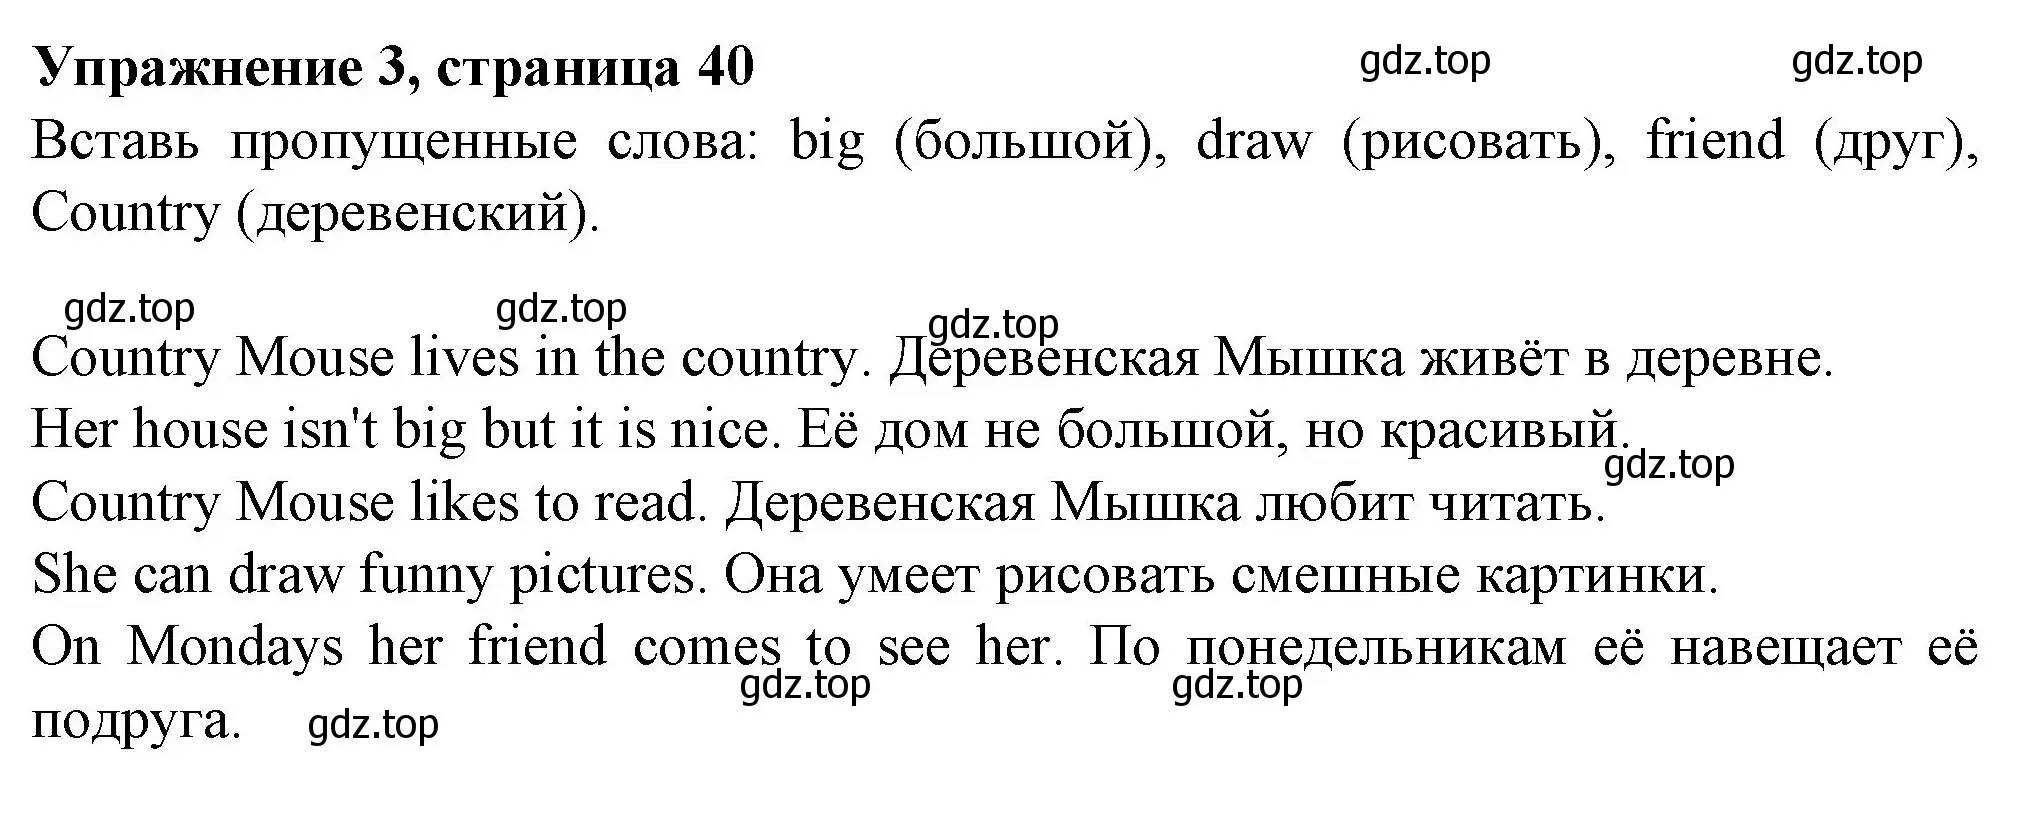 Решение номер 3 (страница 40) гдз по английскому языку 3 класс Биболетова, Денисенко, рабочая тетрадь